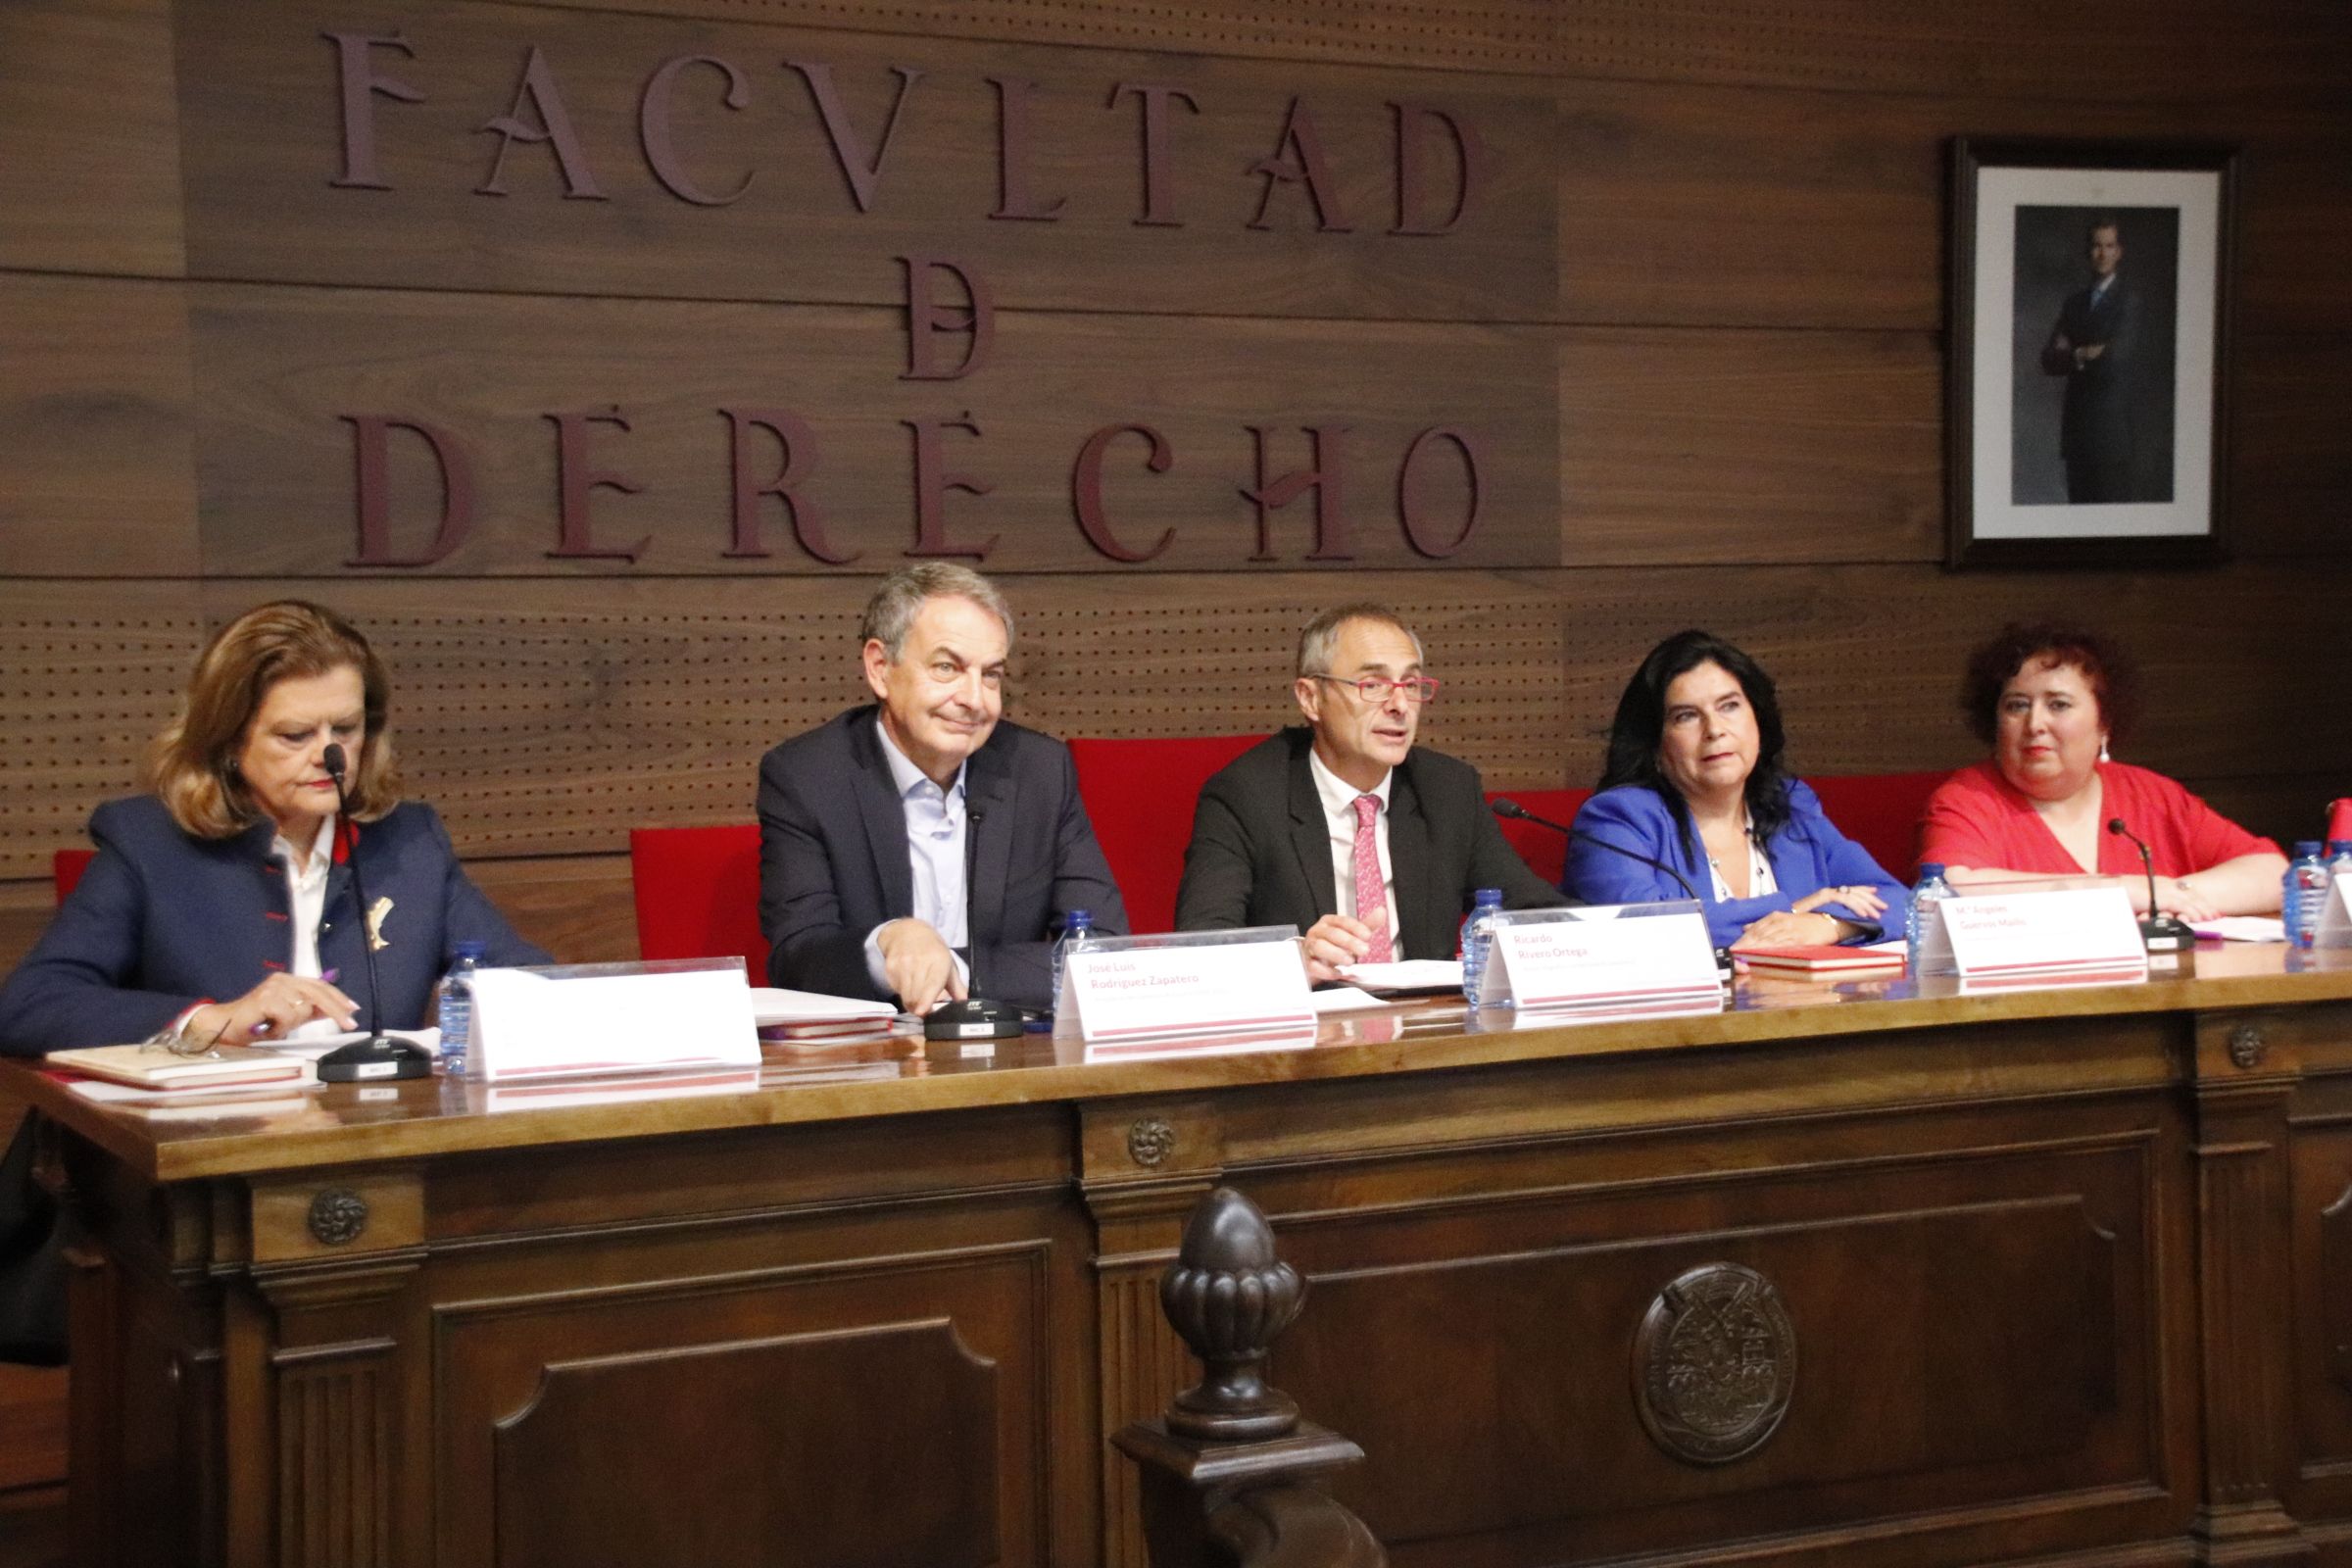 Rodríguez Zapatero asiste a la inauguración del Máster en Estudios Interdisciplinares de Género y del Doctorado en Estudios Interdisciplinares de Género y Políticas de Igualdad